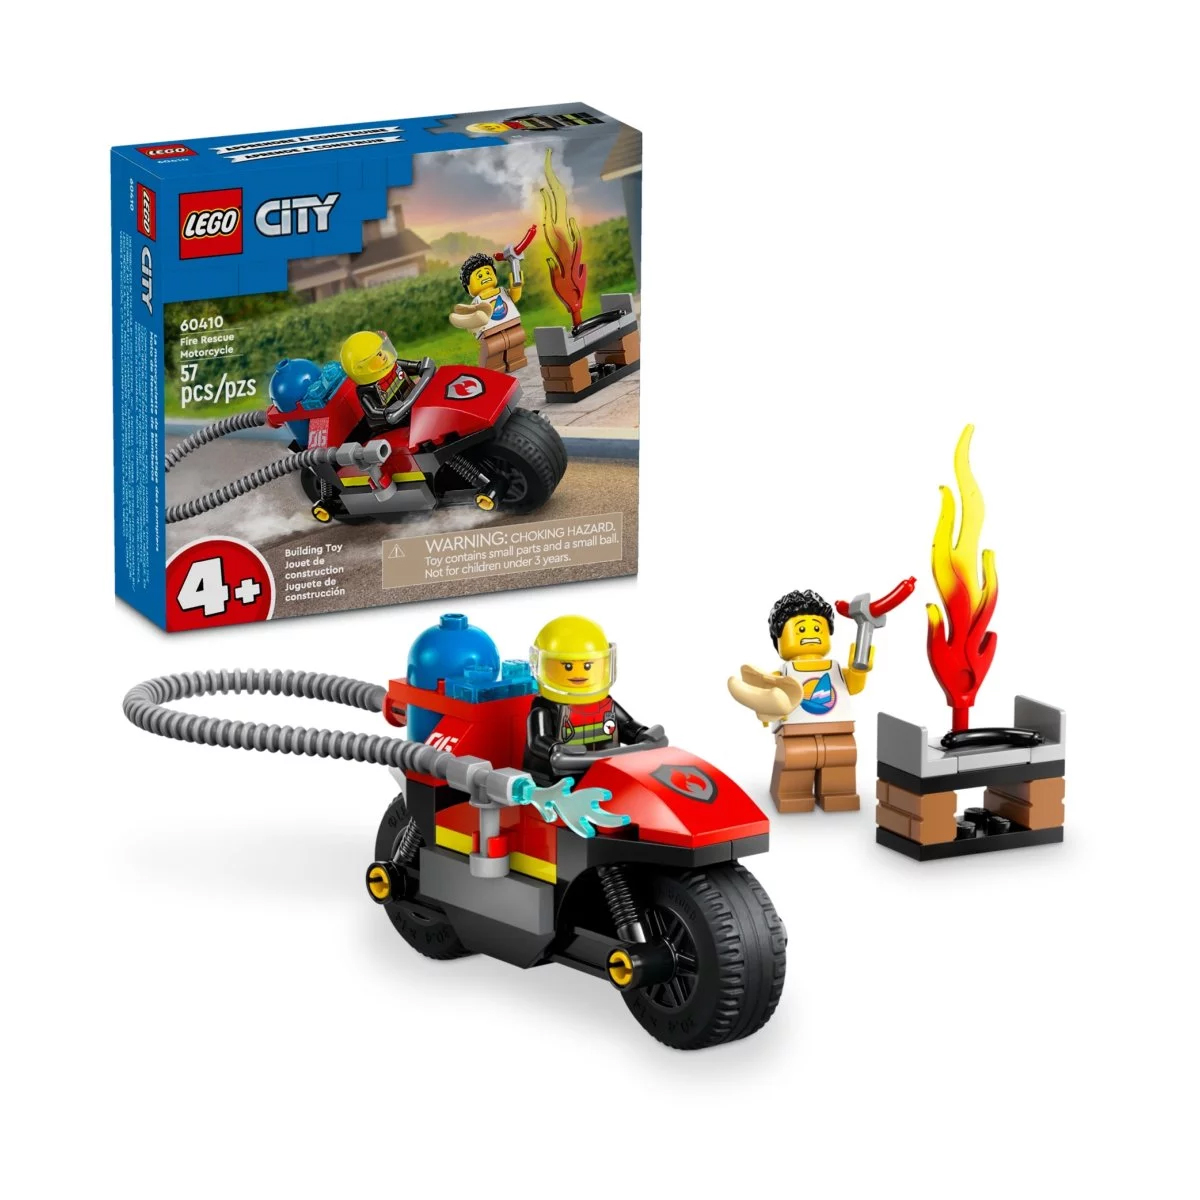 Конструктор Lego City Fire Rescue Motorcycle 60410, 57 деталей конструктор lego city 60410 мотоцикл пожарно спасательных служб